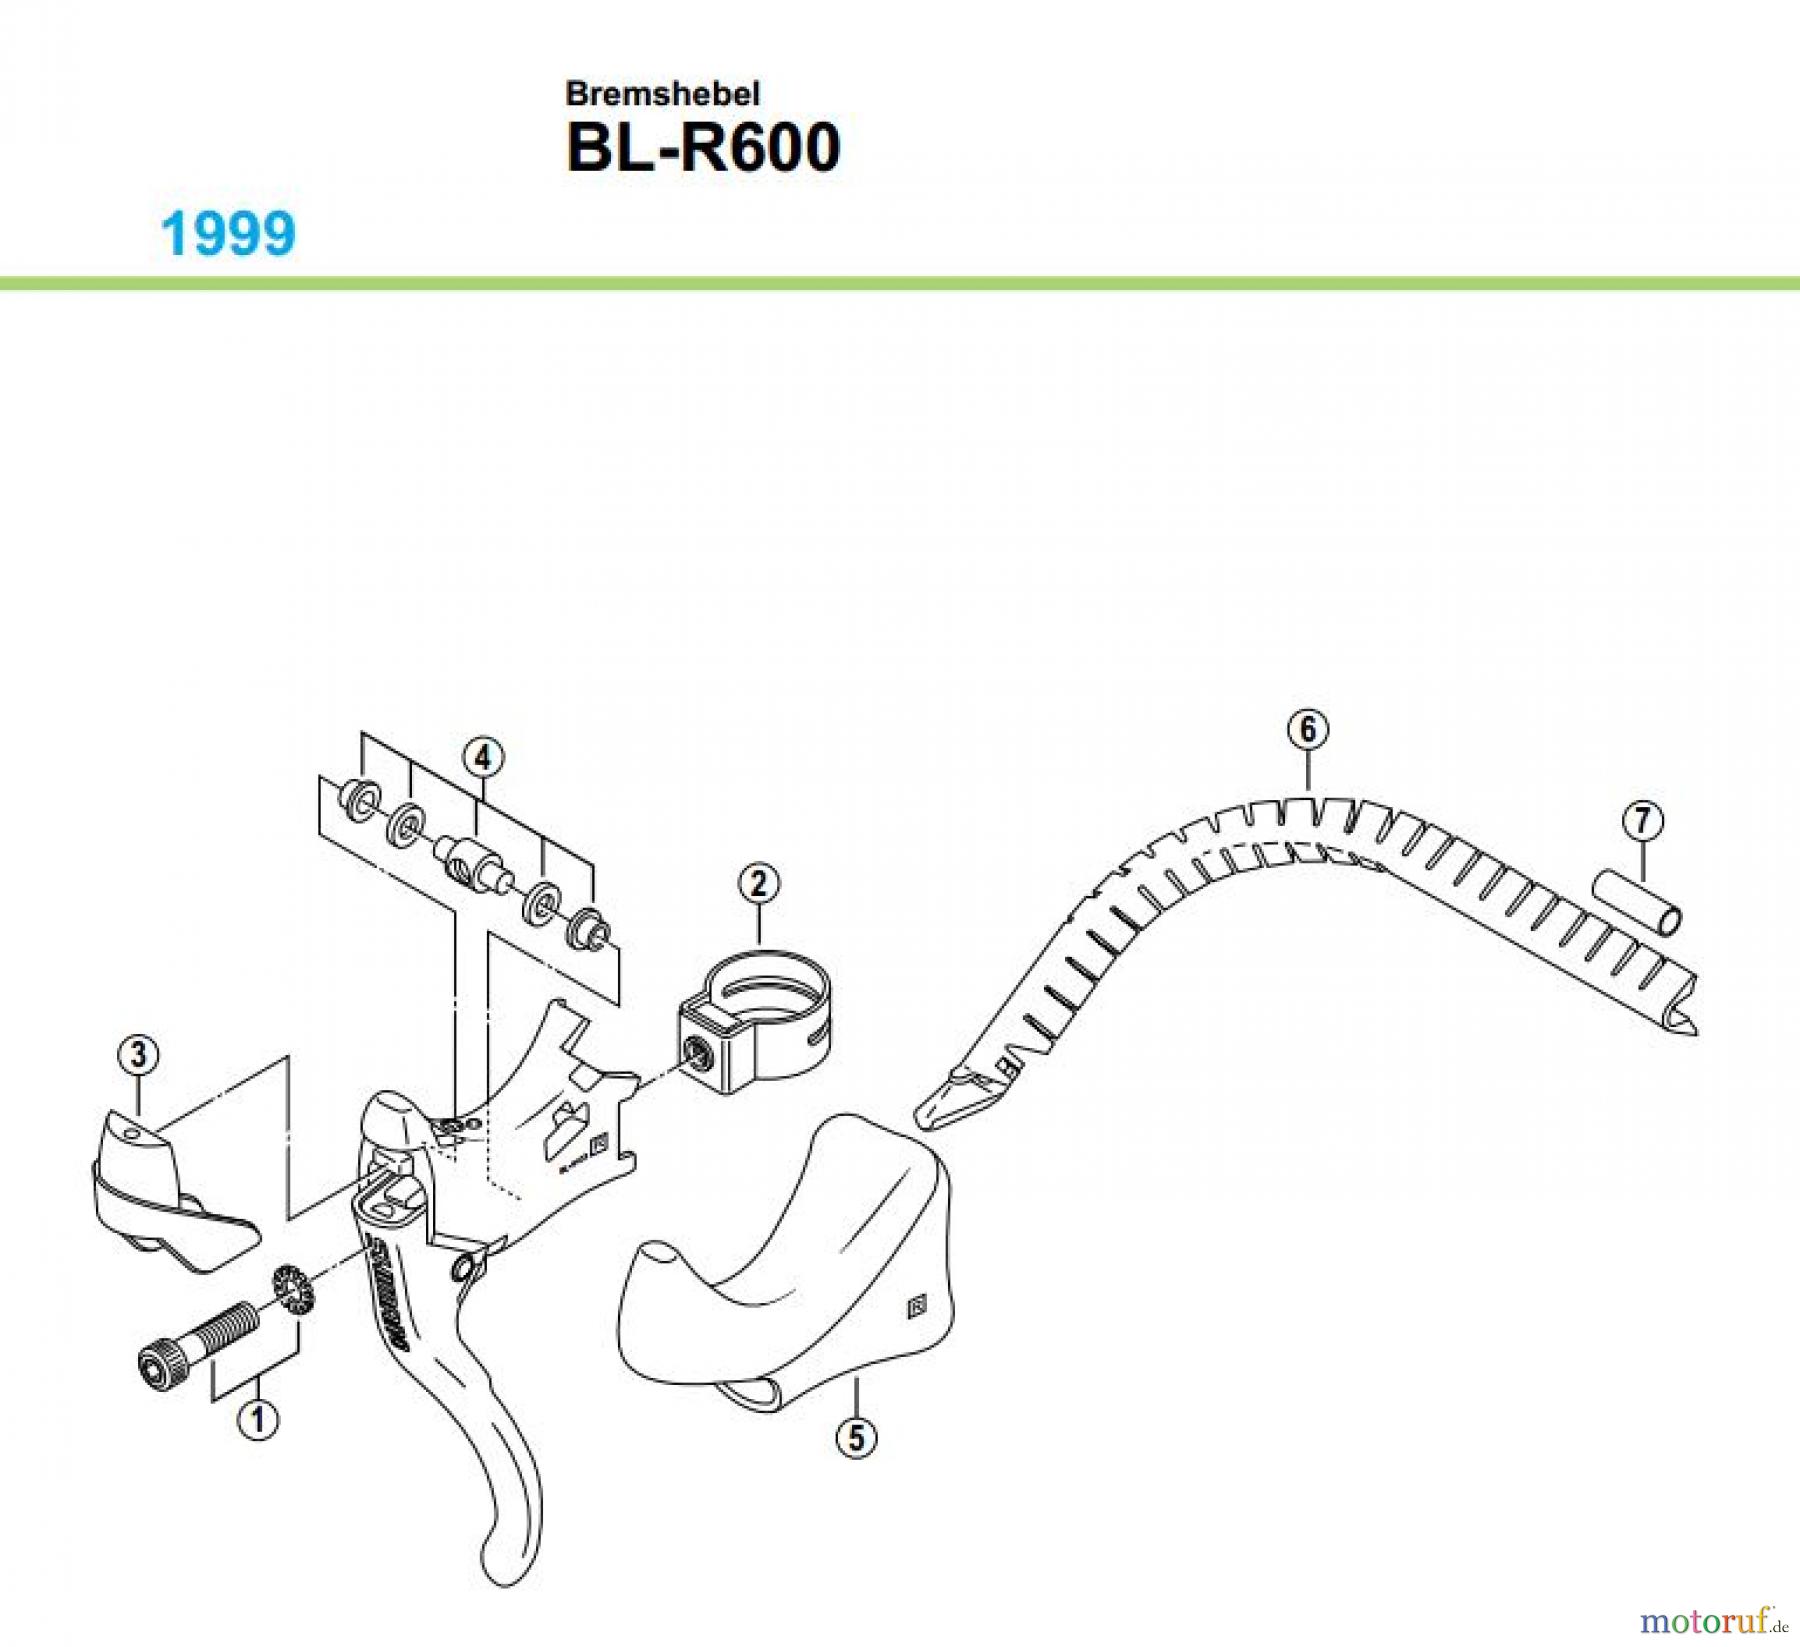  Shimano BL Brake Lever - Bremshebel BL-R600-99